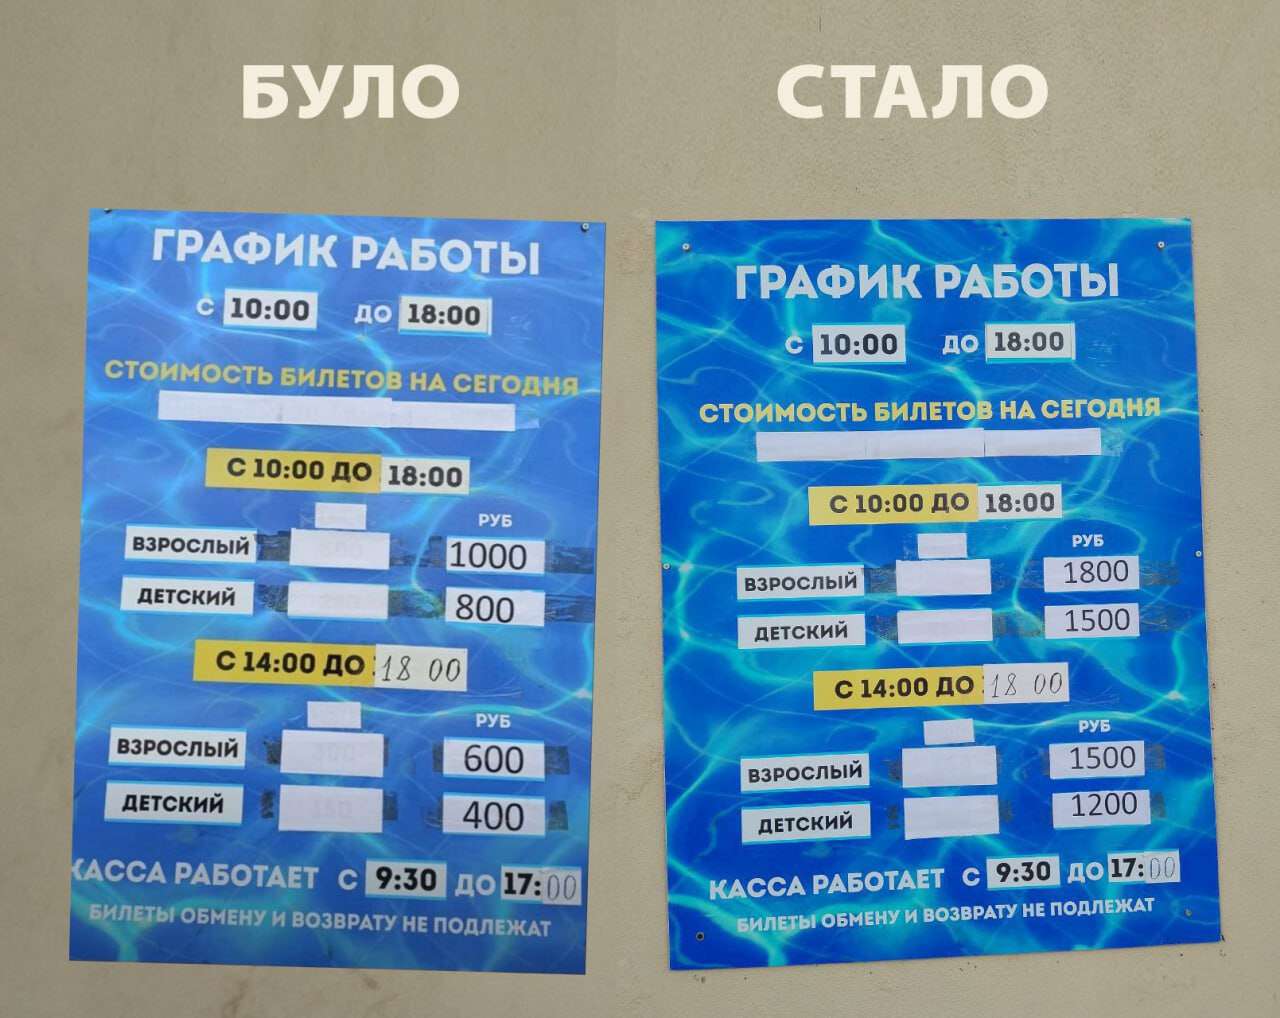 цены на аквапарк в Бердянске